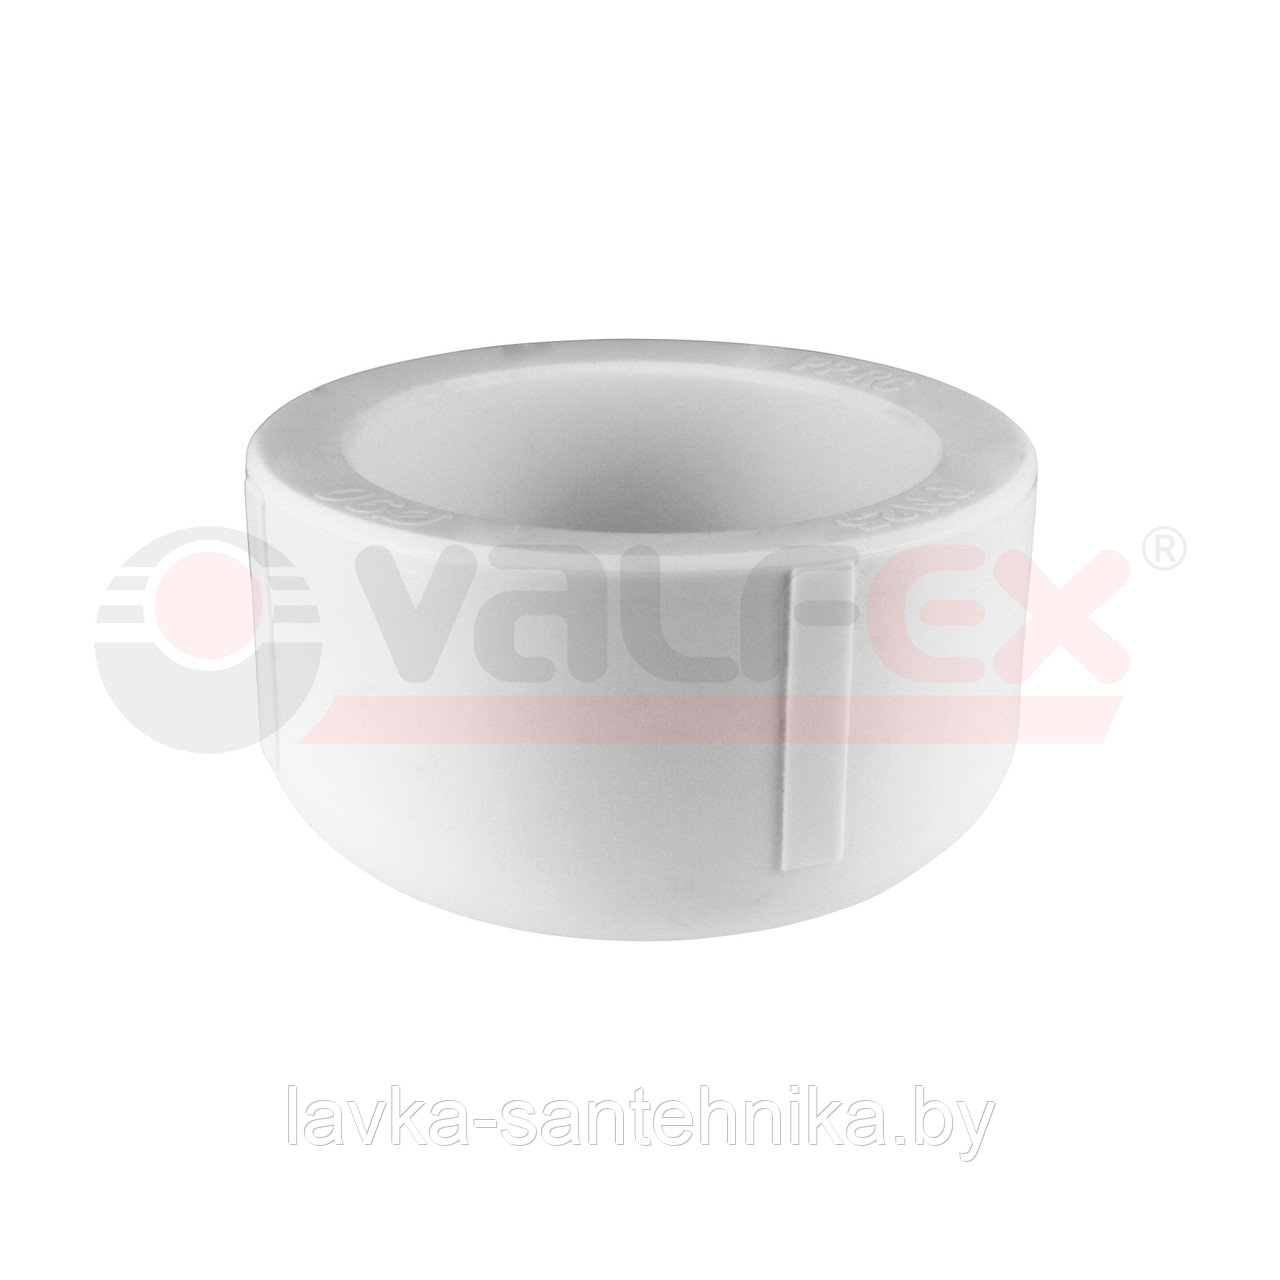 Заглушка 20 мм полипропиленовая Valfex (цвет: серый)